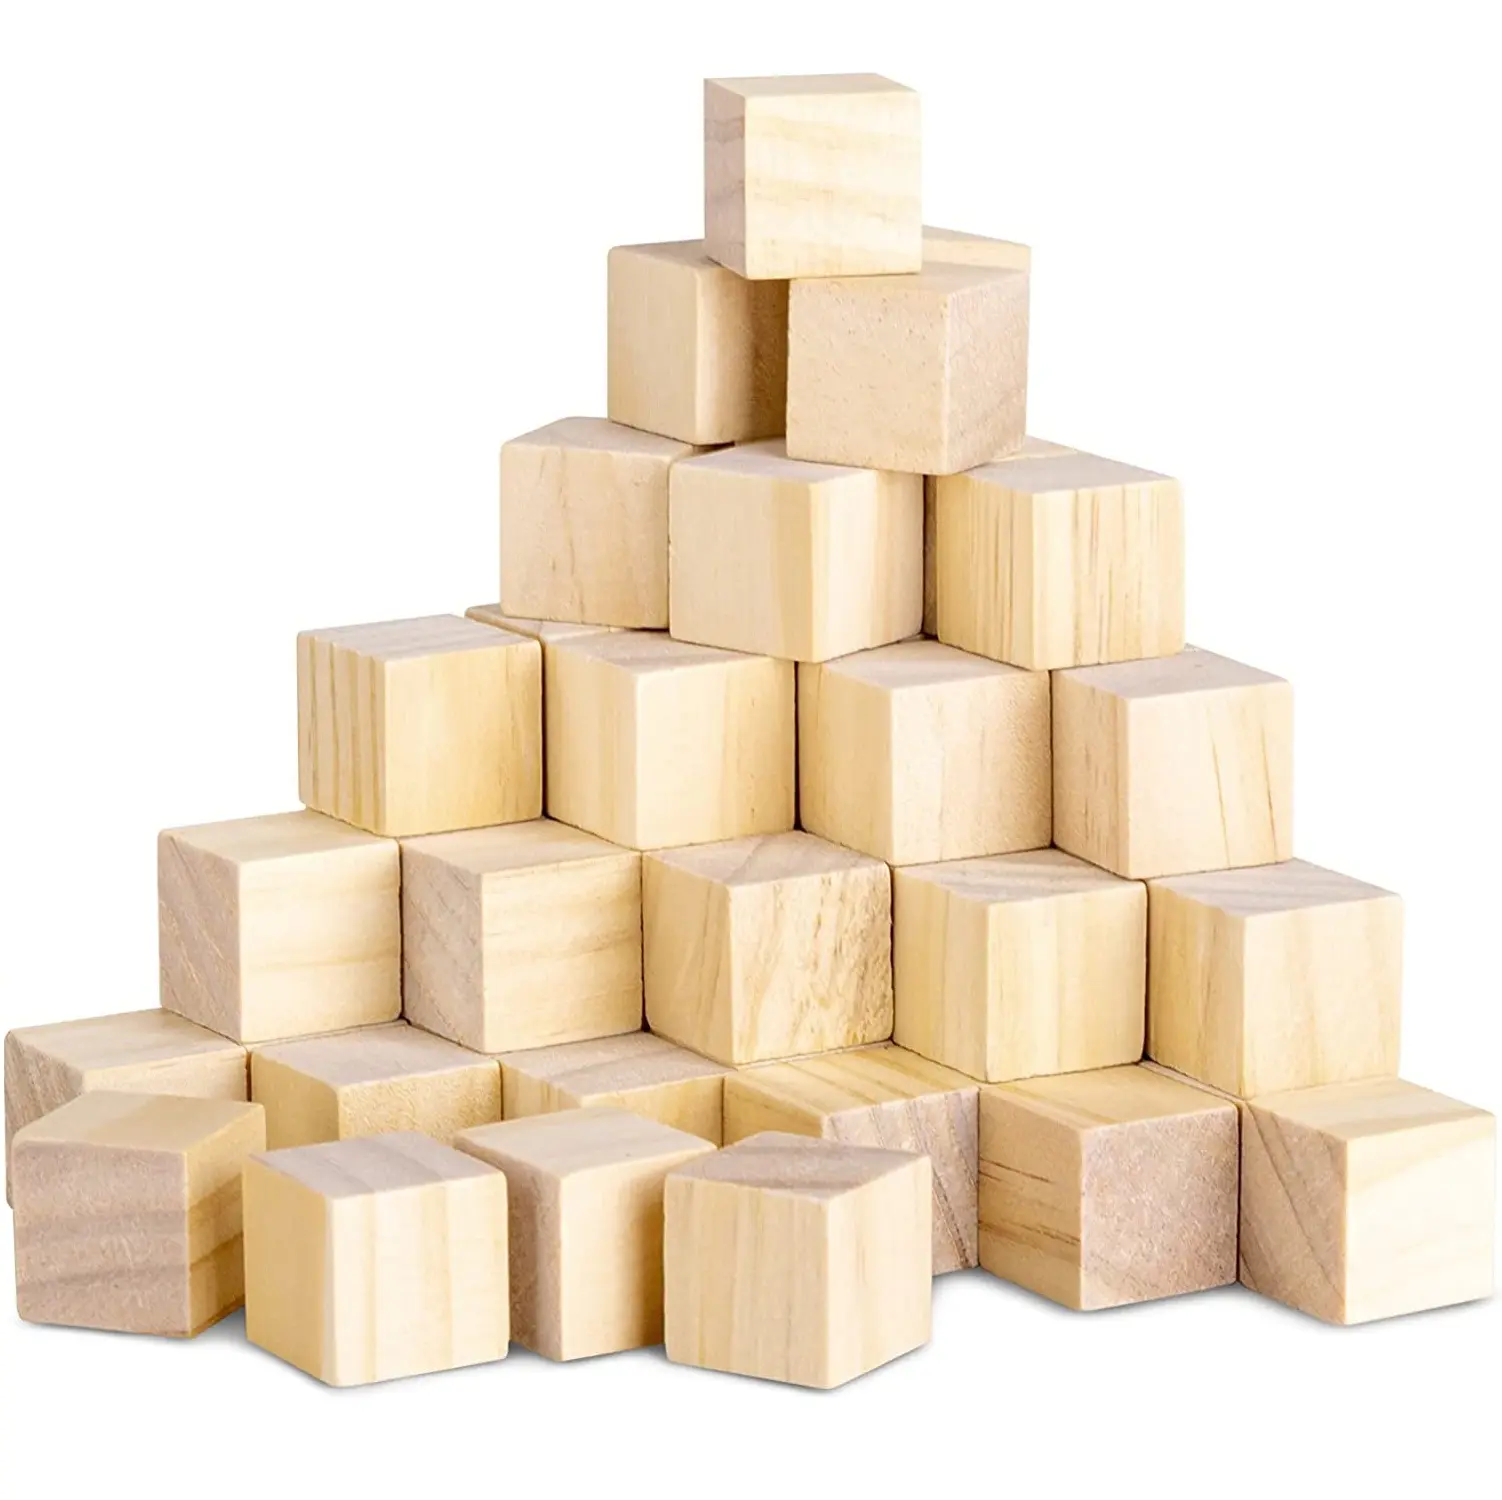 天然ブランク無垢材ブロックは、未研磨の木製ブロックボックスのパズル製作工芸品やDIYプロジェクトで使用されています